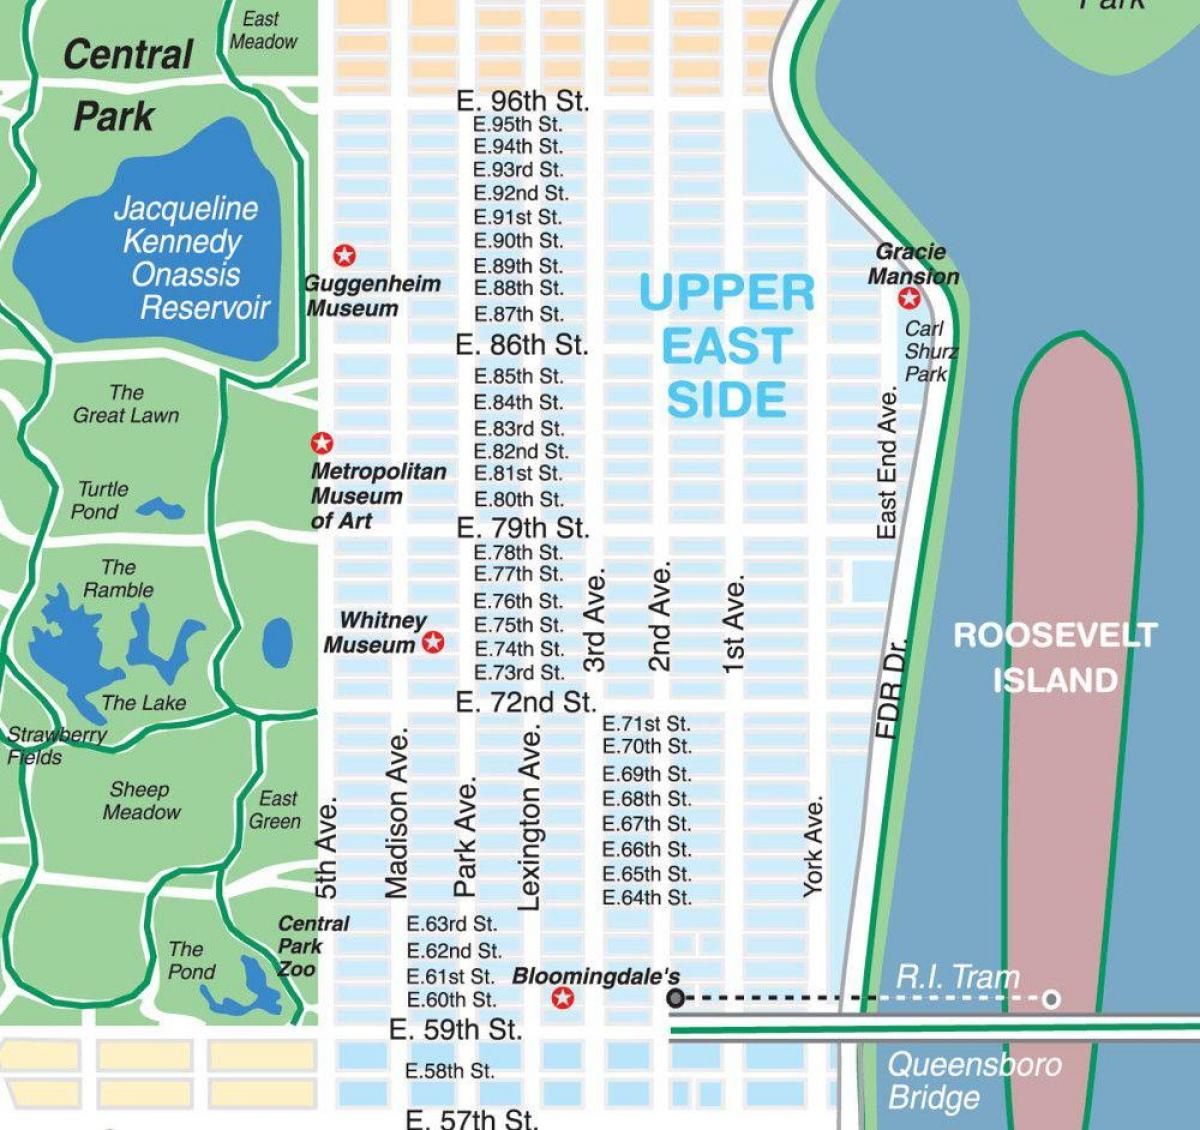 карта на горен Ийст сайд в Манхатън